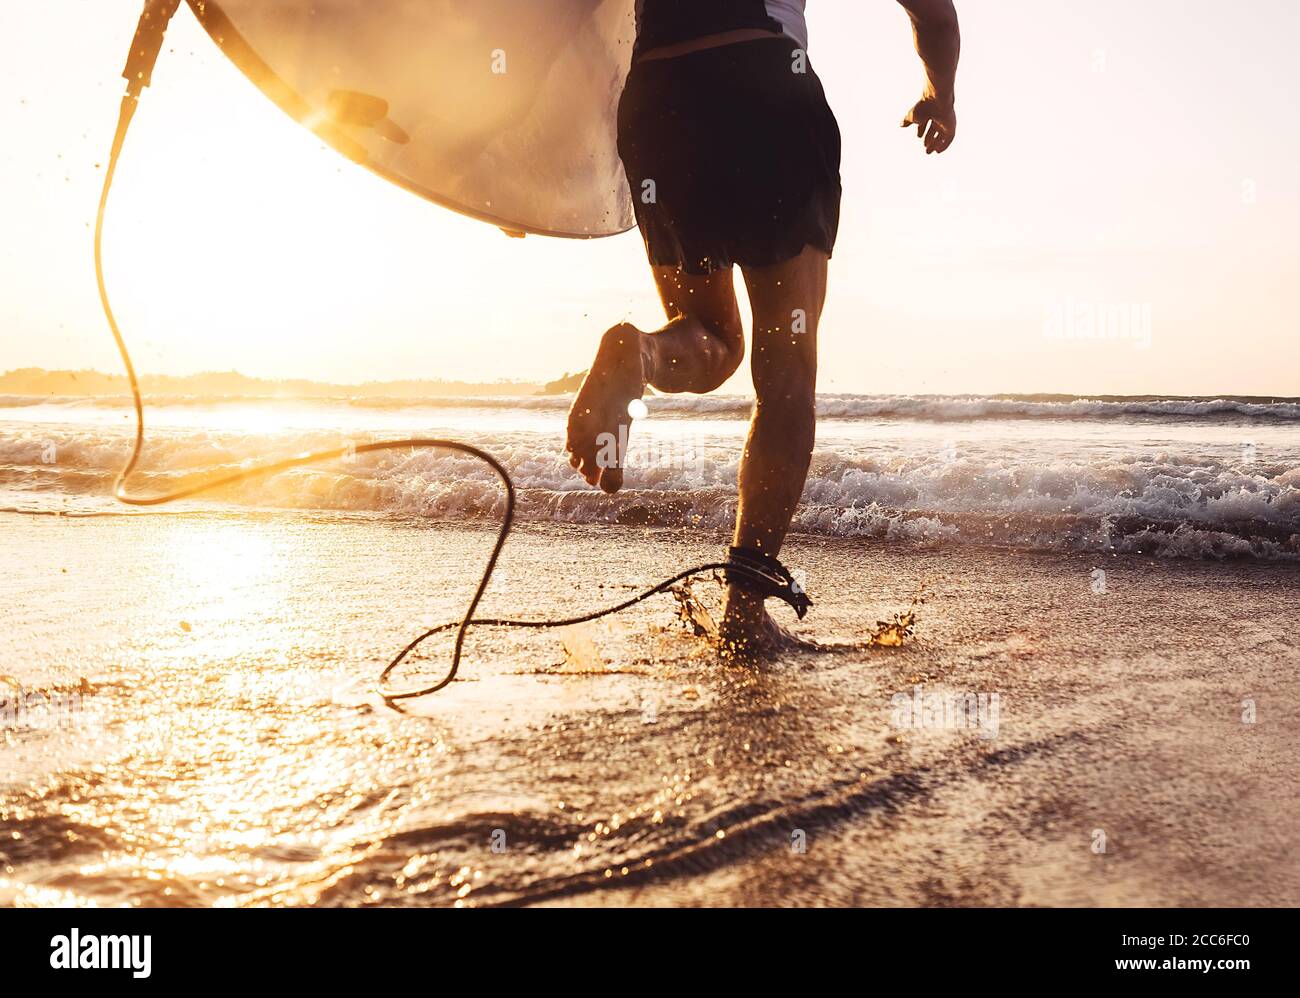 Man Surfer laufen im Meer mit Surfbrett. Aktiver Urlaub, Gesundheit Lifestyle und Sport Konzept Bild Stockfoto